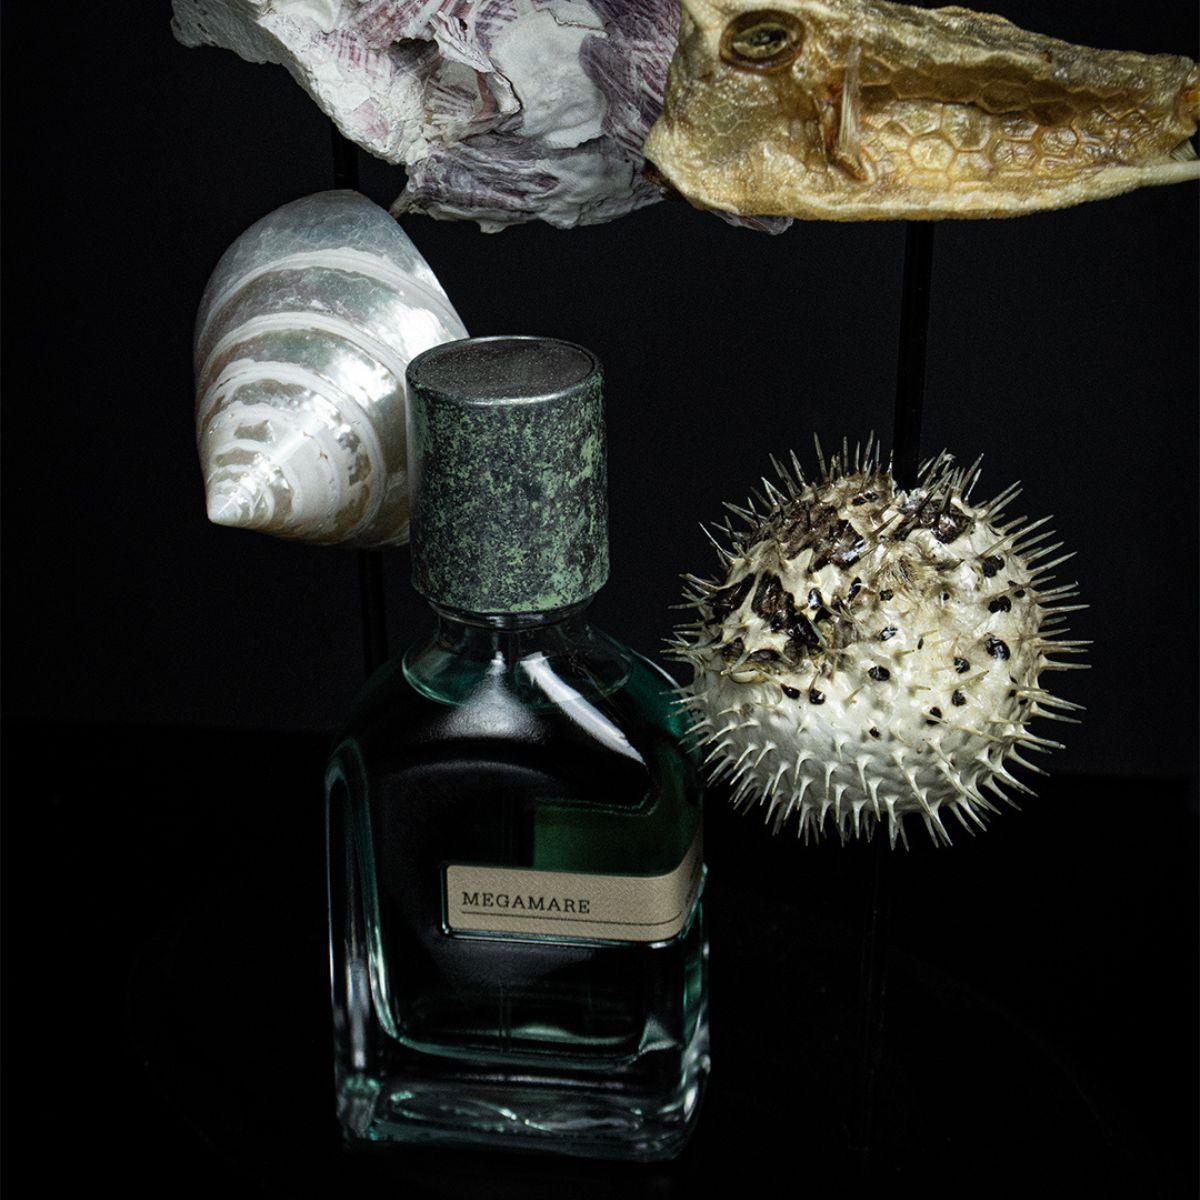 Afbeelding van Megamare extrait de parfum 50 ml van het parfum merk Orto Parisi